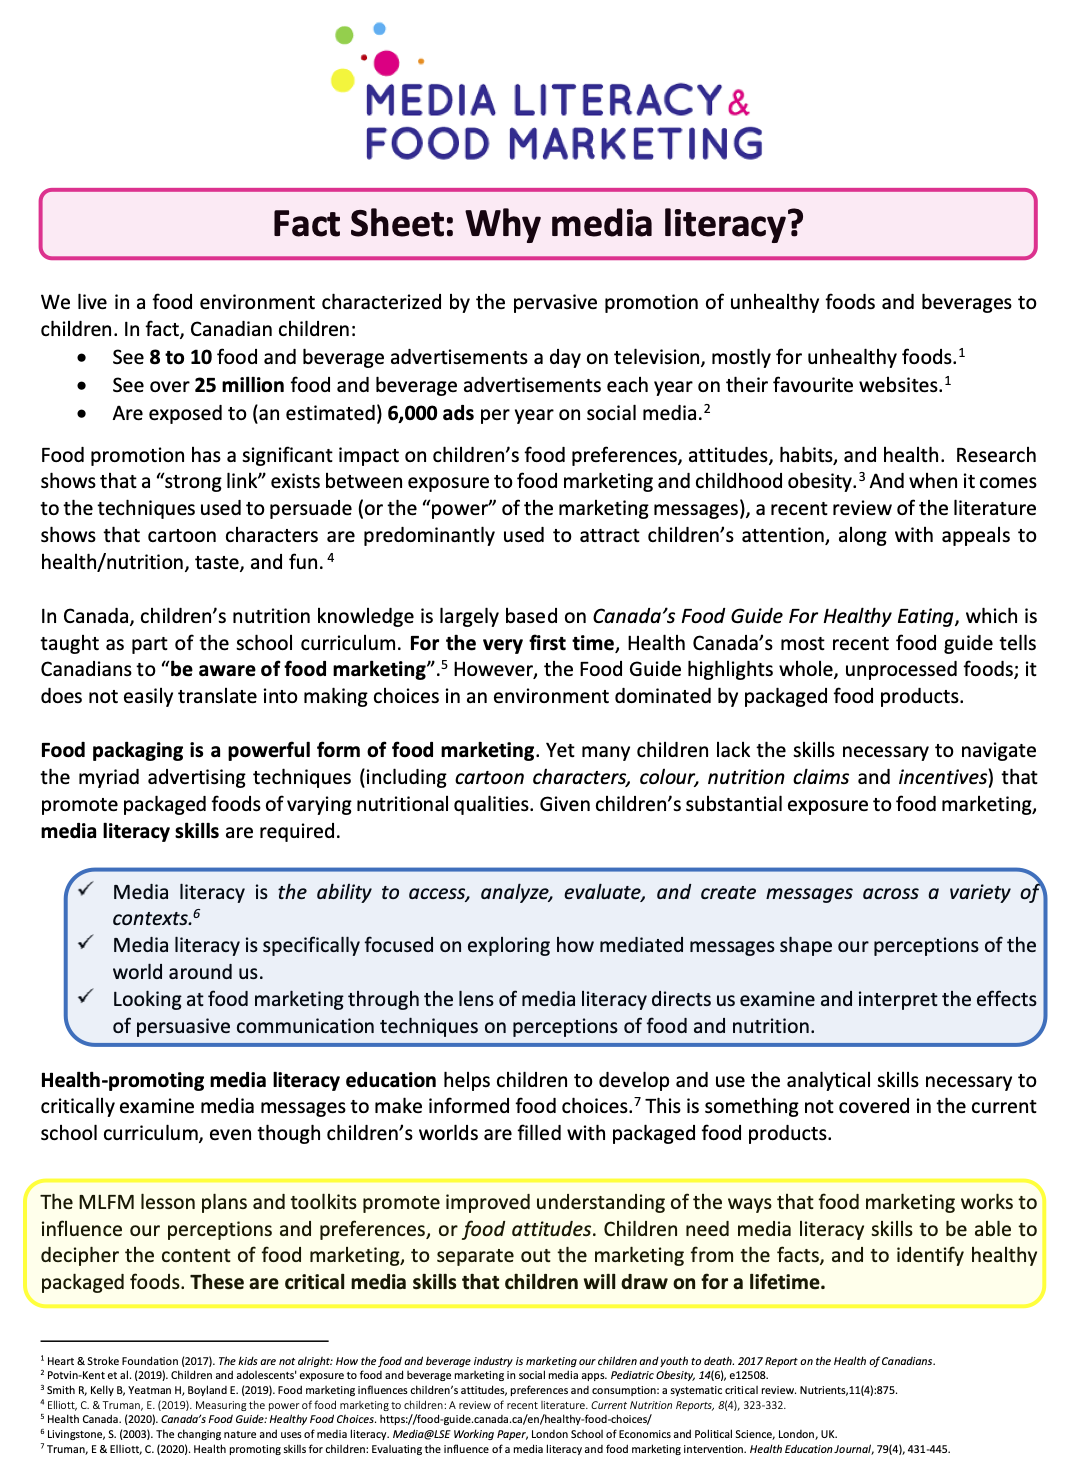 Why Media Literacy?